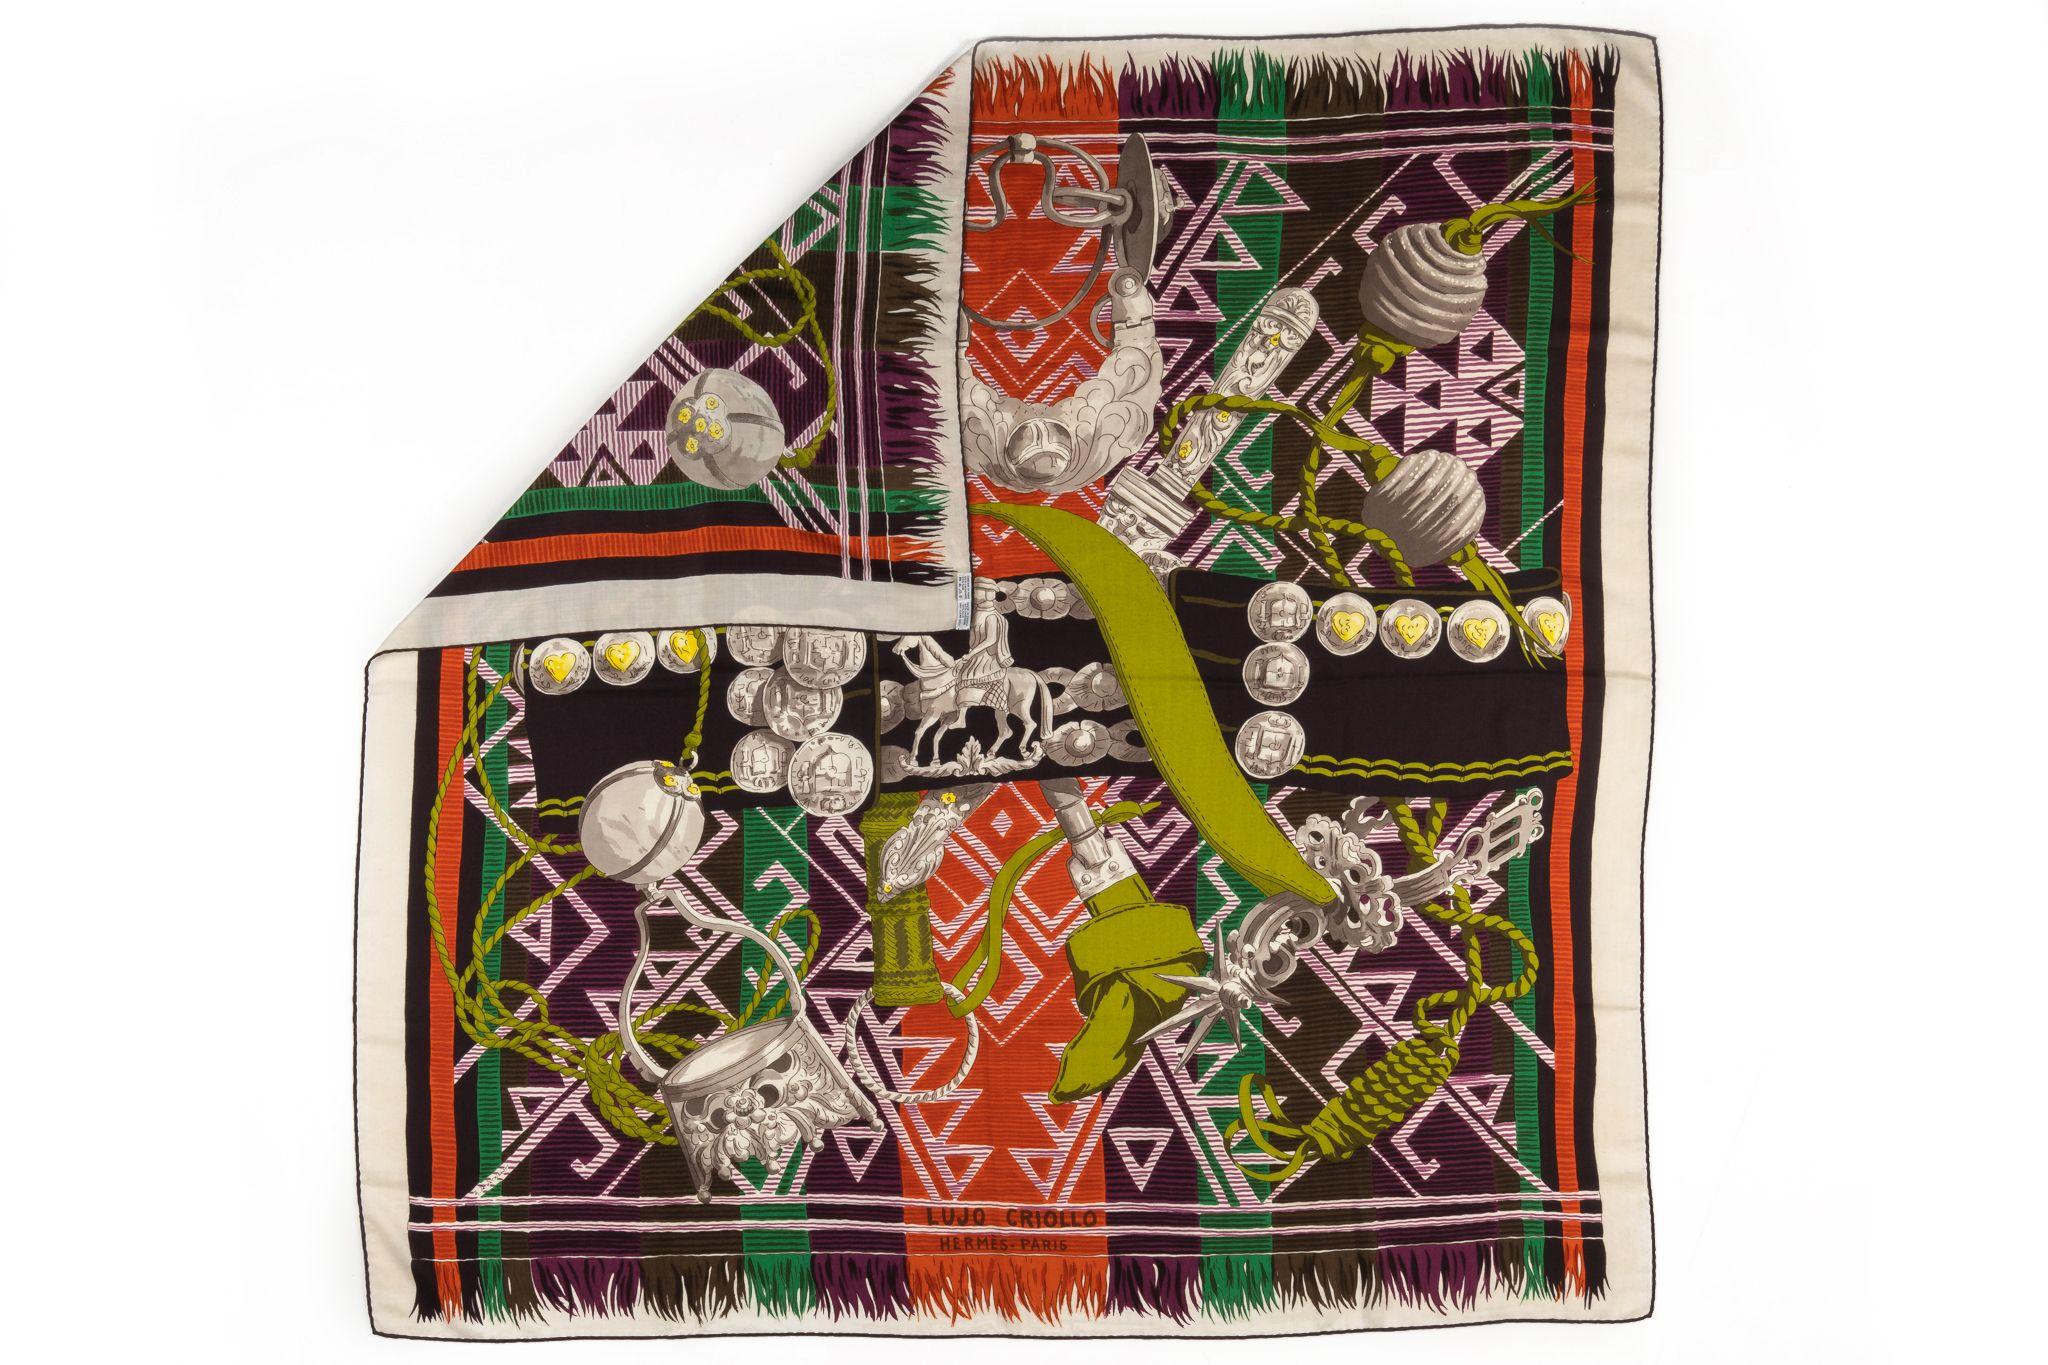 Hermès “Lujo Criollo” cashmere/silk blend cashmere shawl.